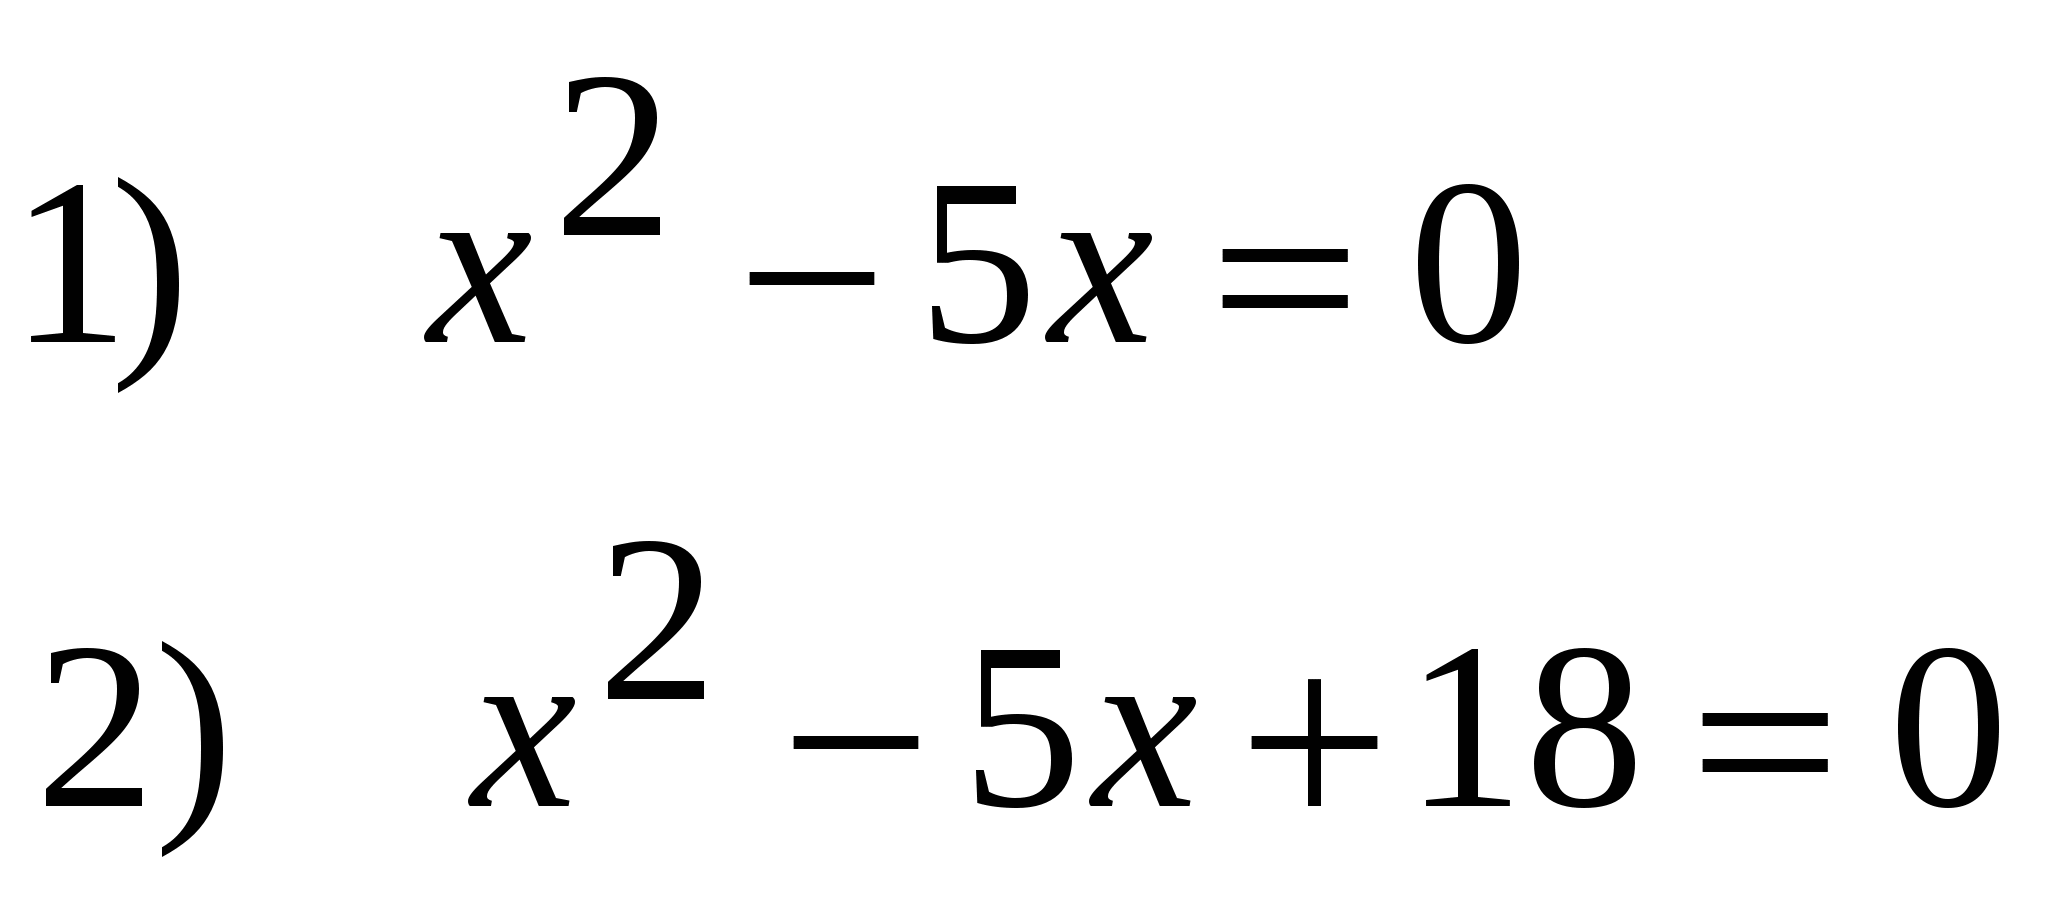 Урок по теме Решение квадратных уравнений